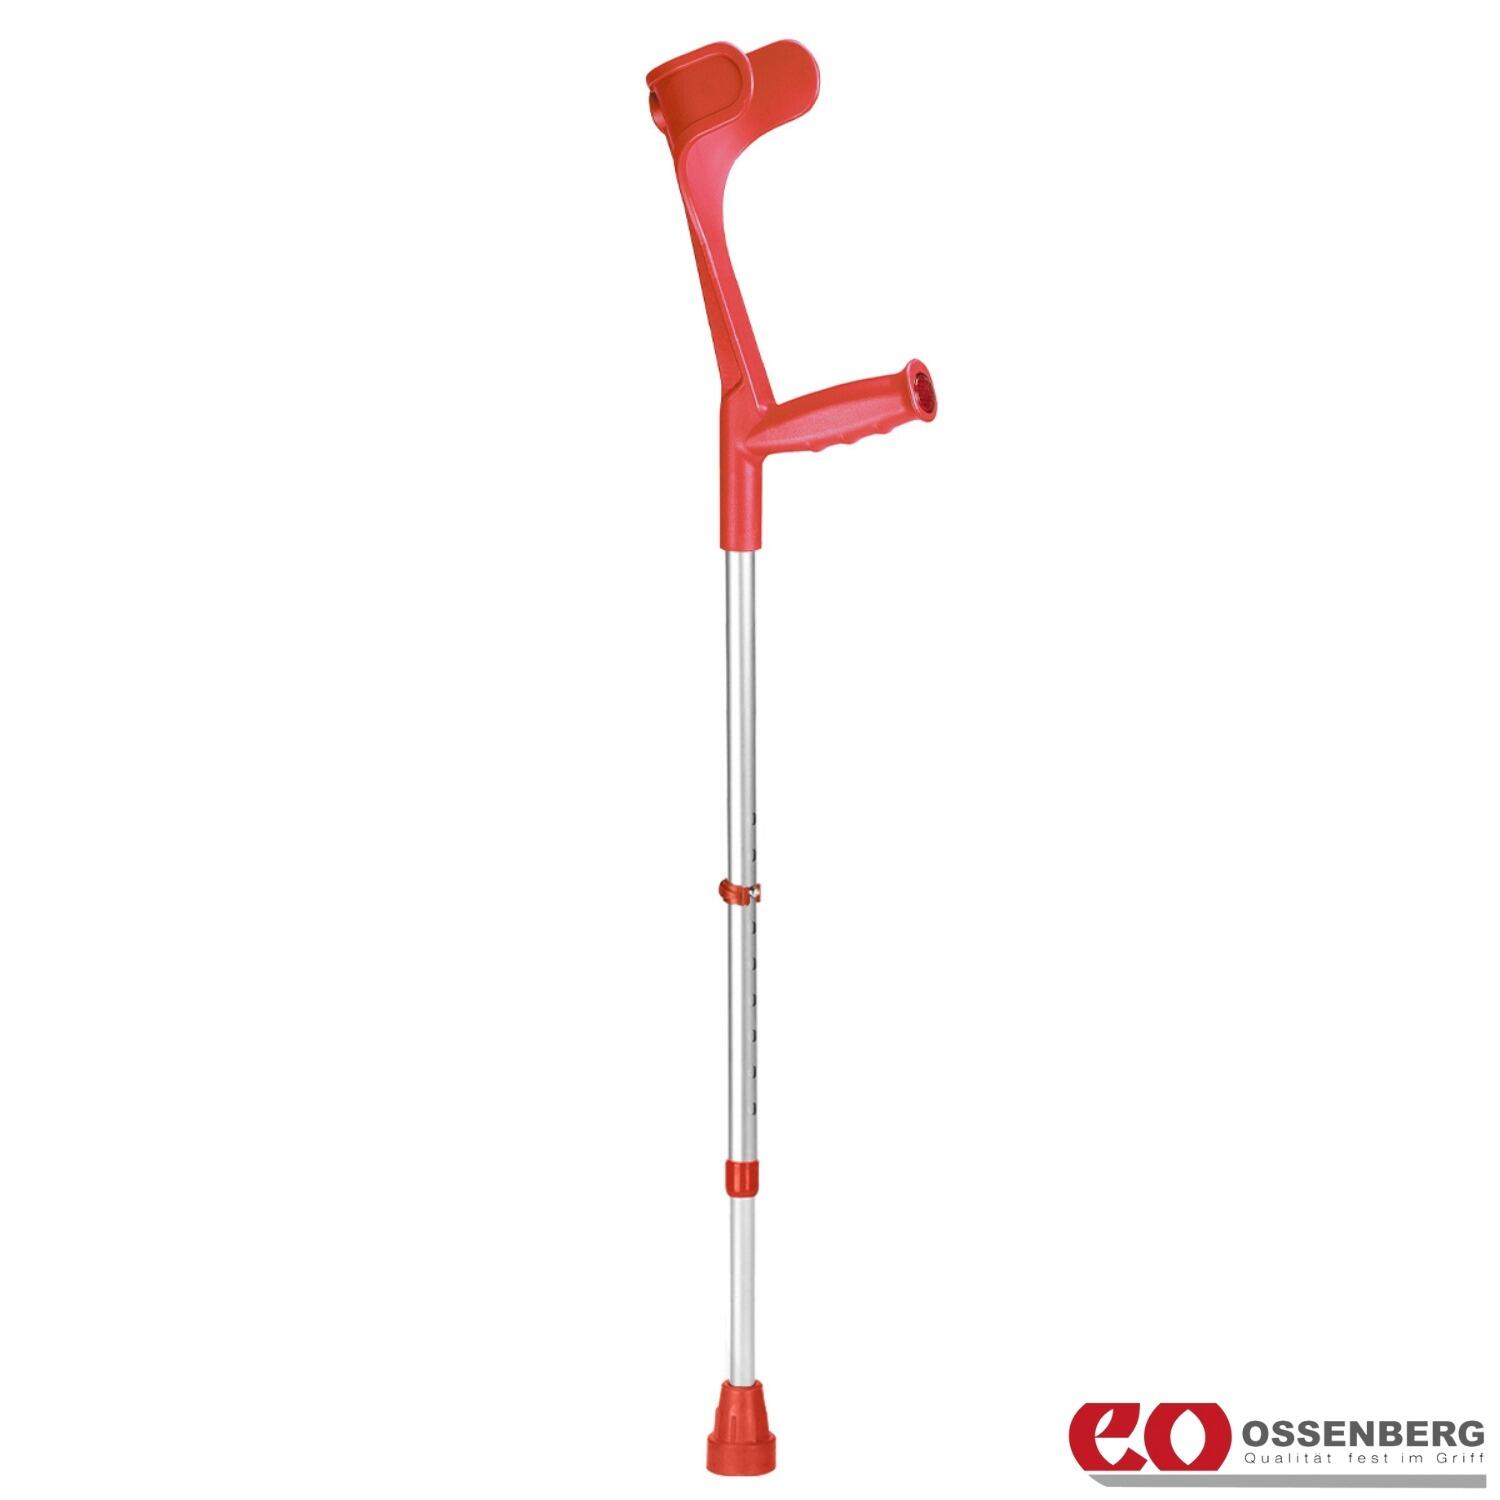 Ossenberg-Classic-Open-Cuff-Crutch-Red